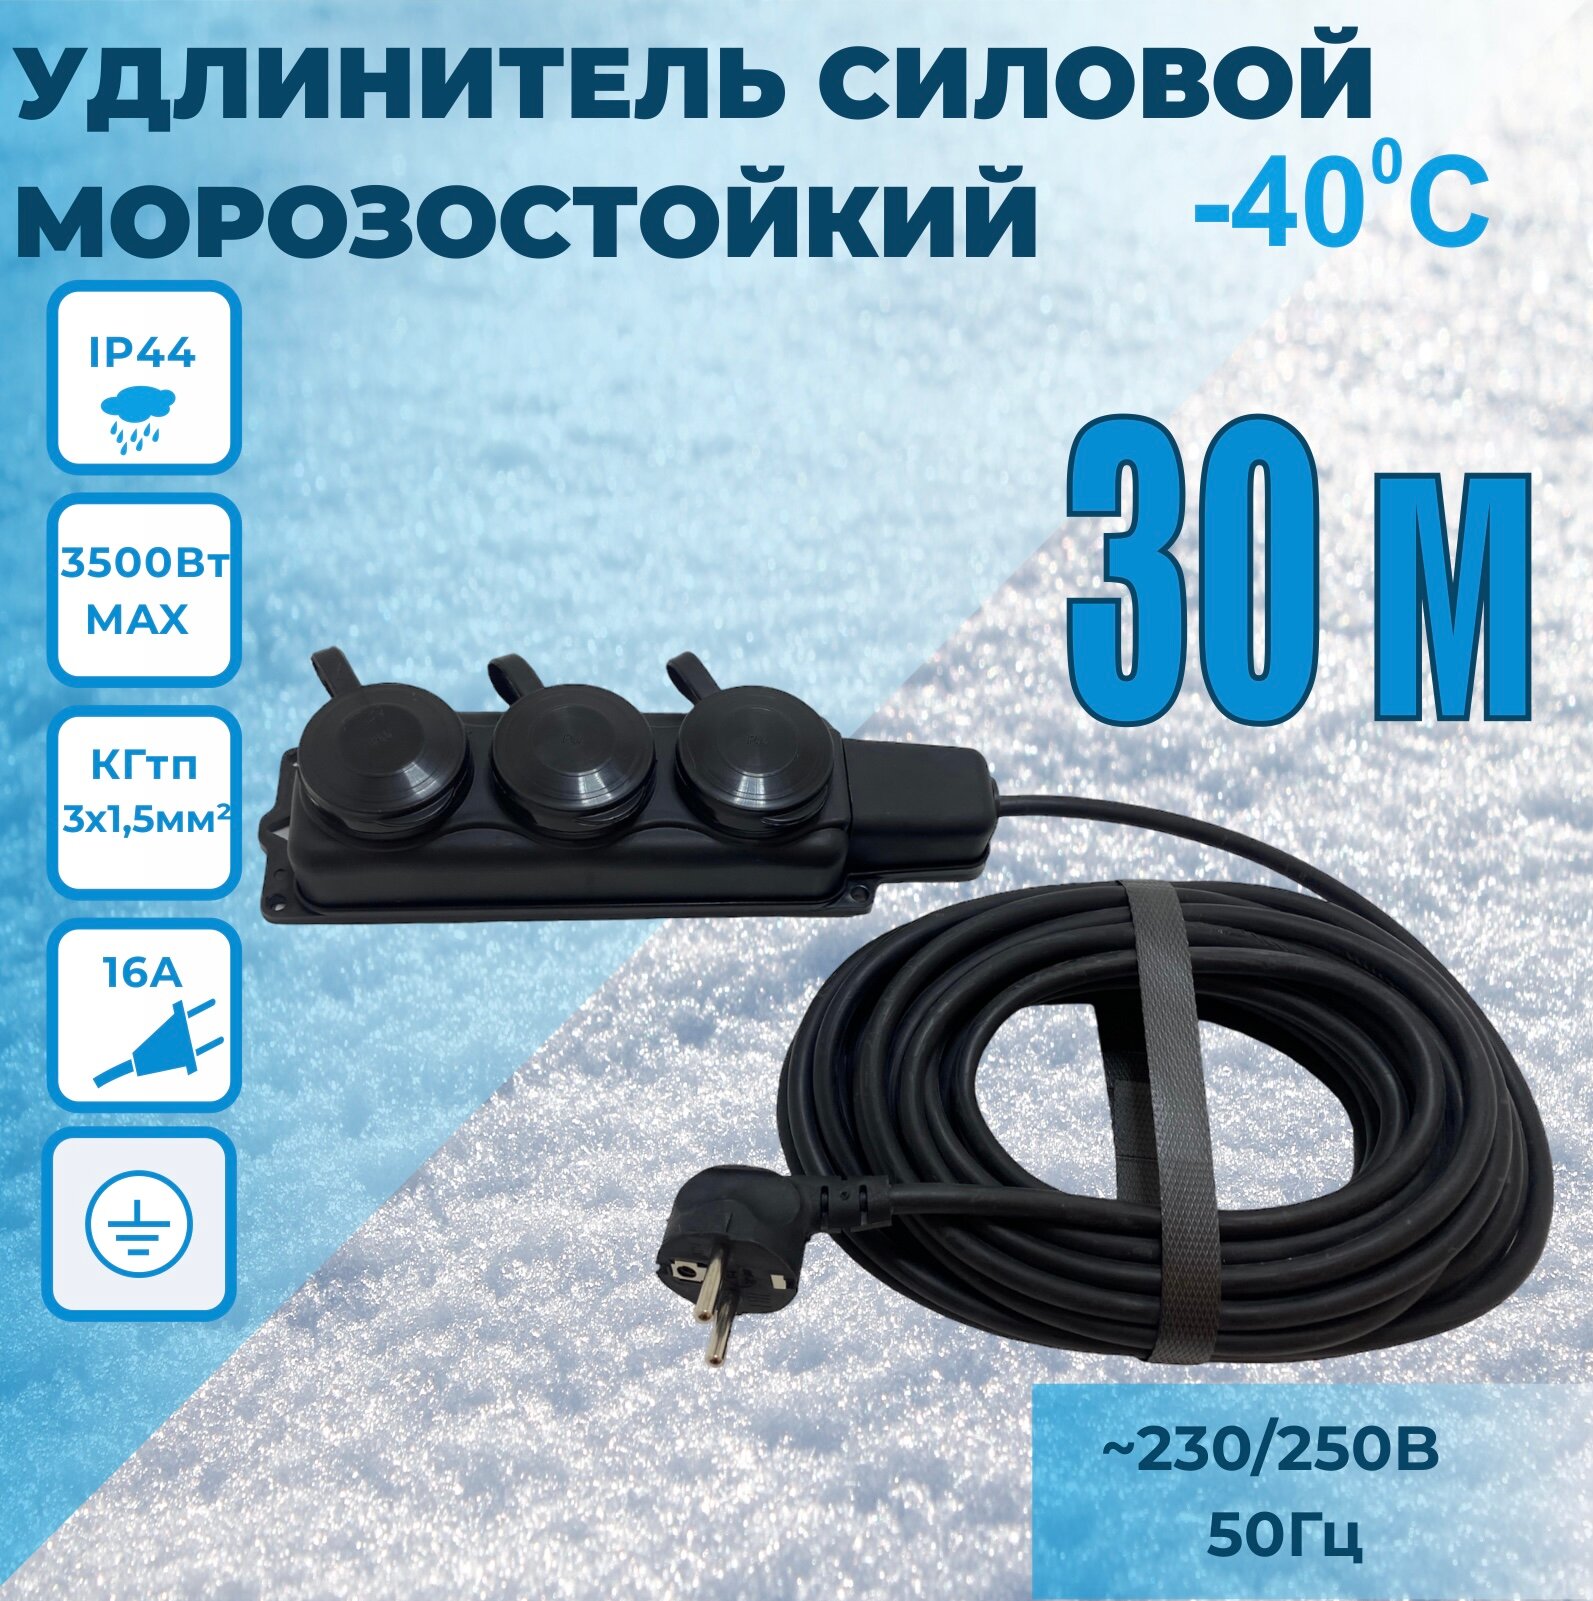 Удлинитель силовой шнур SIGMA 30м, морозостойкий КГтп 3*1,5мм IP44